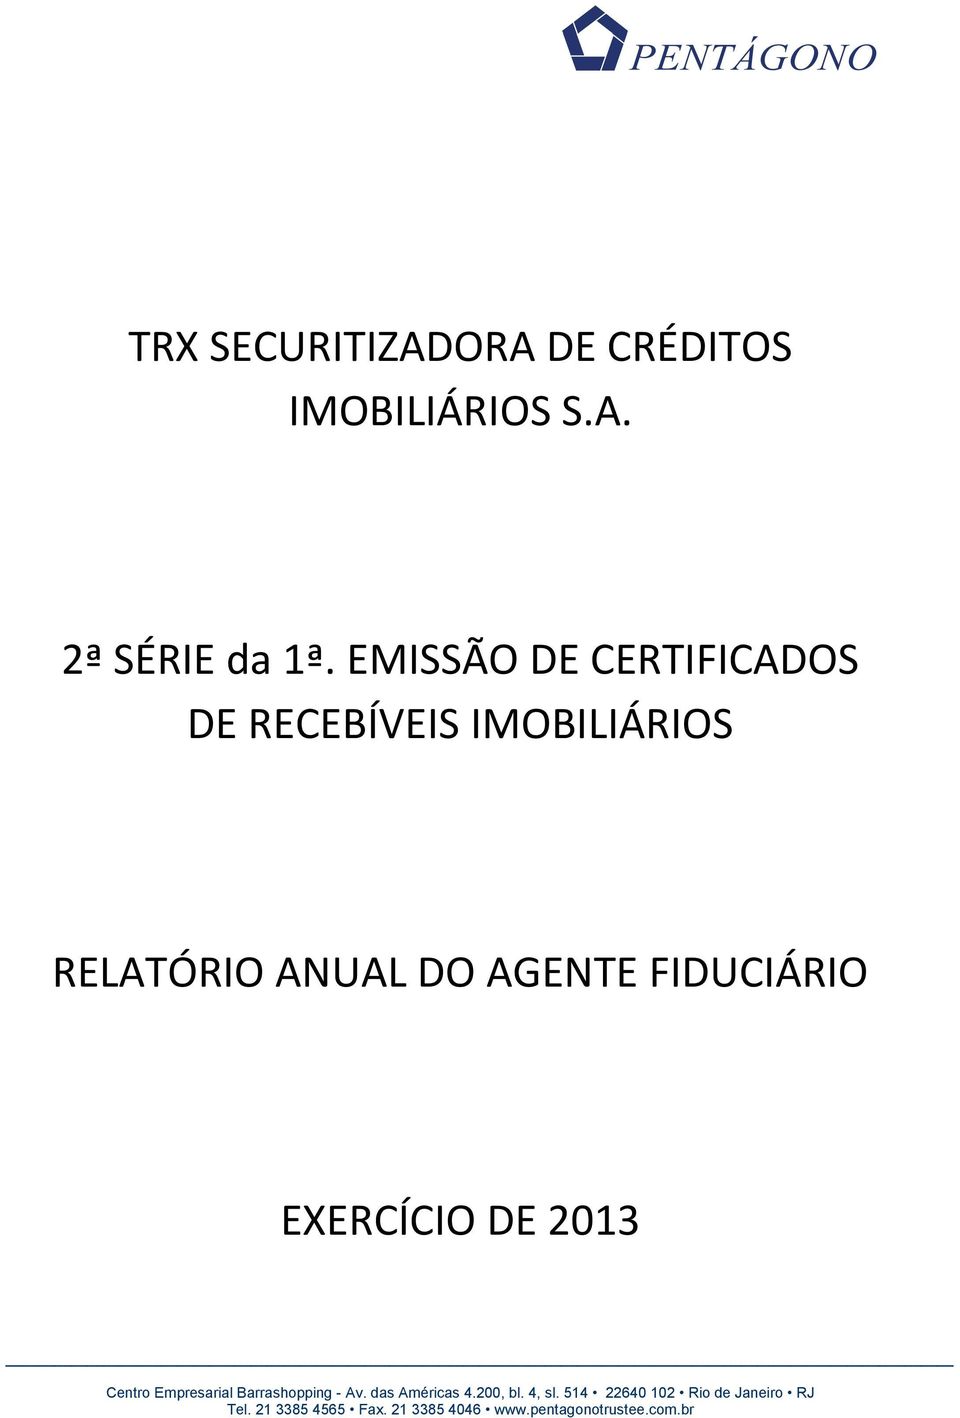 EMISSÃO DE CERTIFICADOS DE RECEBÍVEIS